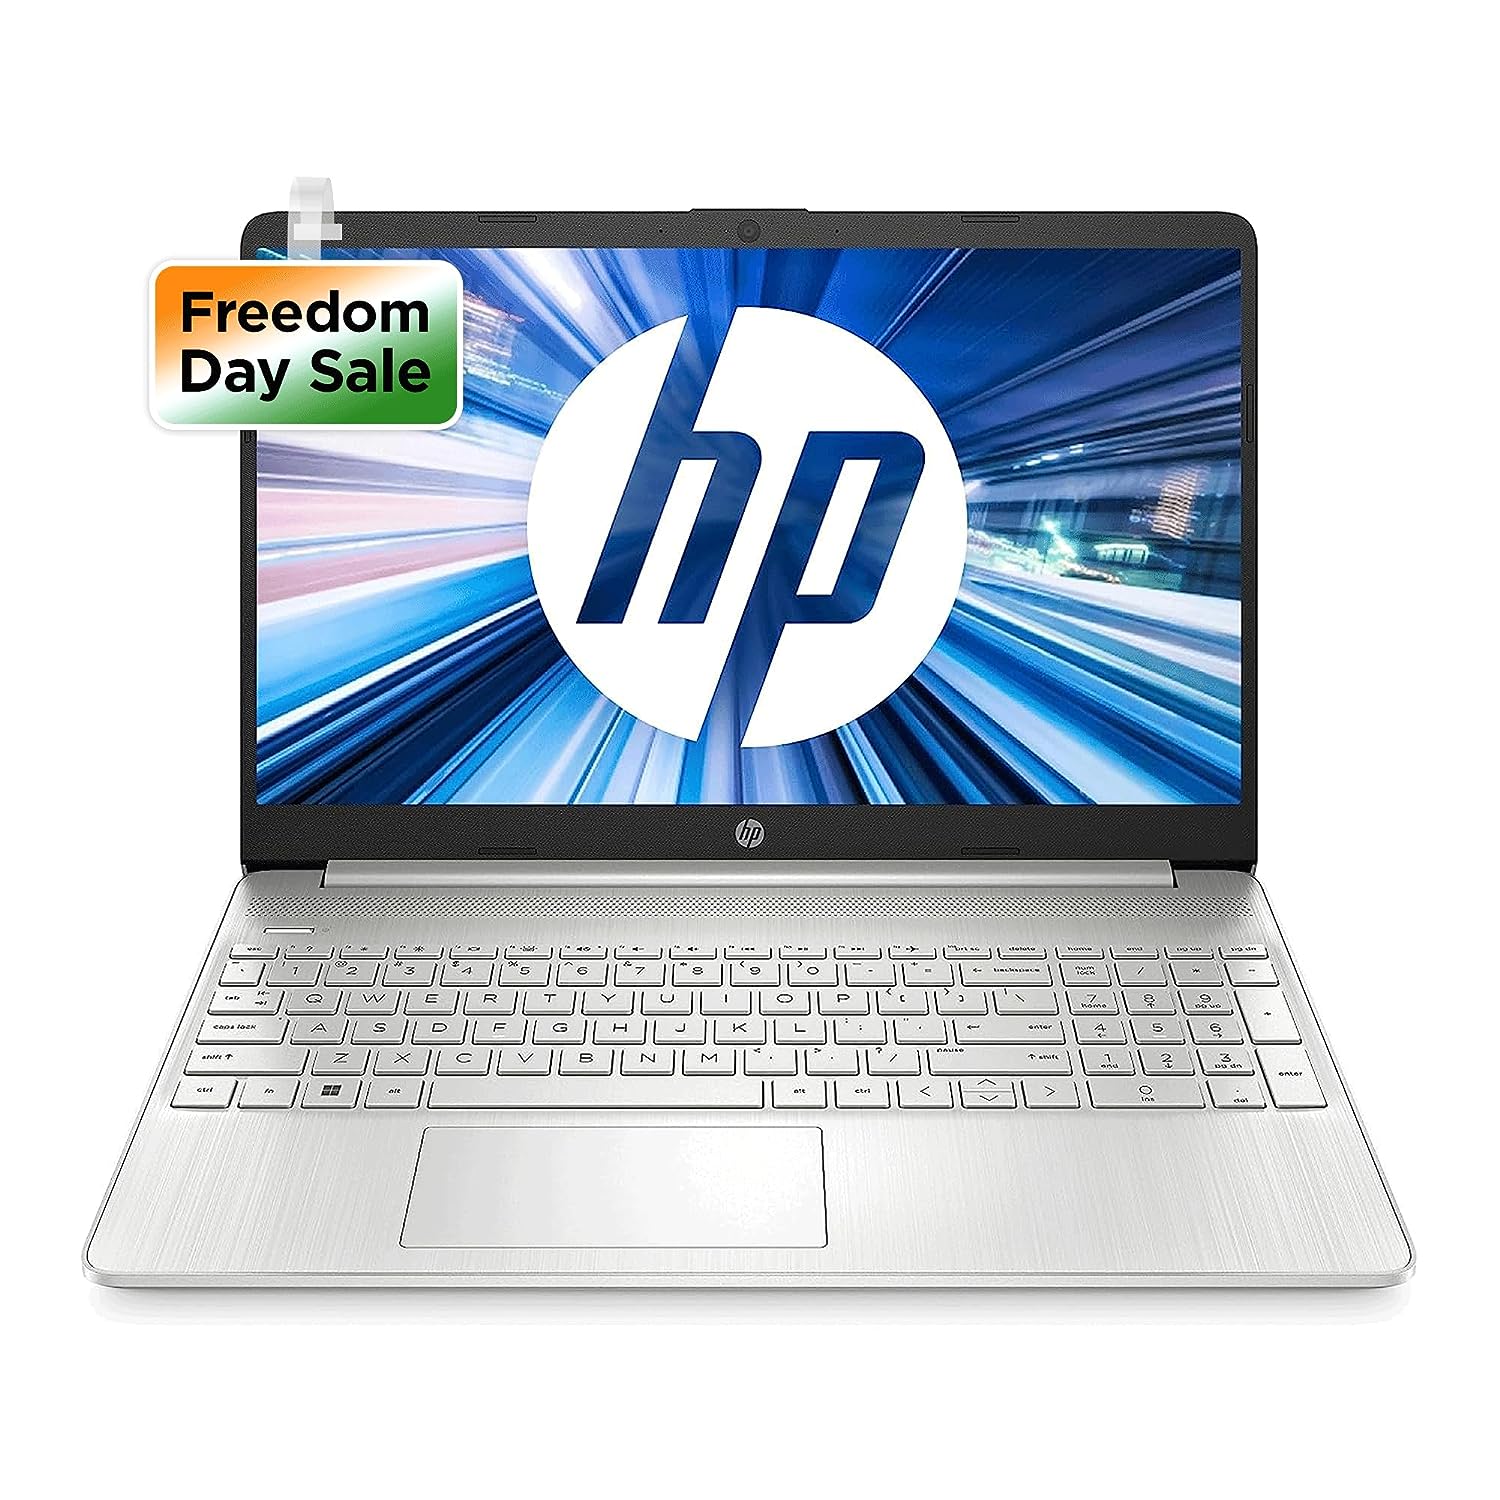 HP Laptop 15s, 12th Gen Intel Core i7-1255U, 15.6-inch (39.6 cm), FHD, 16GB DDR4, 512GB SSD, Intel Iris Xe Graphics, Backlit KB, Thin & Light (Win 11, MSO 2021, Silver, 1.69 kg), fq5190TU